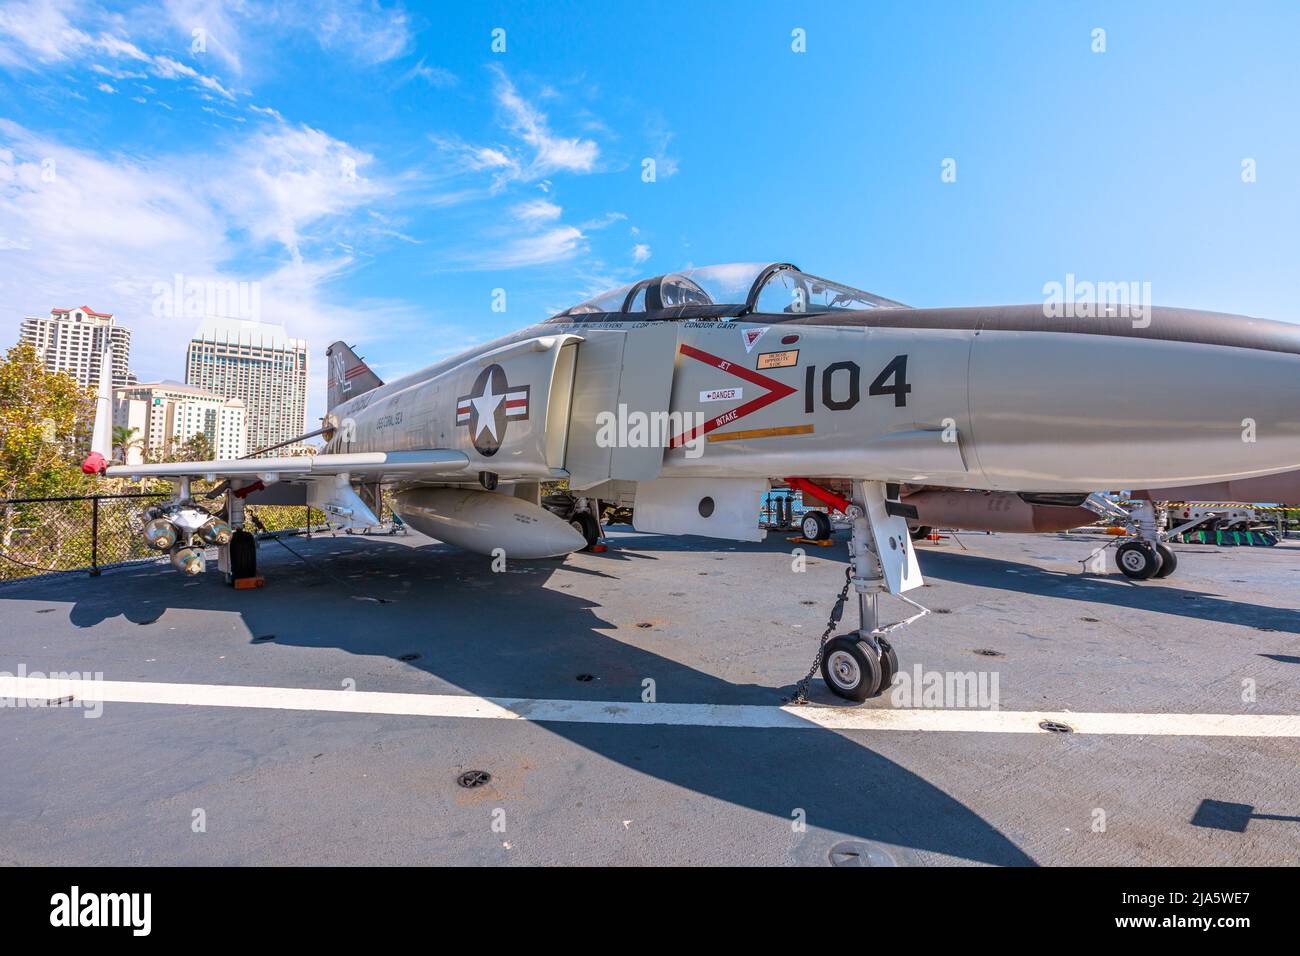 San Diego, Vereinigte Staaten - JULI 2018: McDonnell Douglas F-4 Phantom II. Amerikanischer Überschalljet-Abfangjäger und Jagdbomber von 1960s in der Luftfahrt Stockfoto